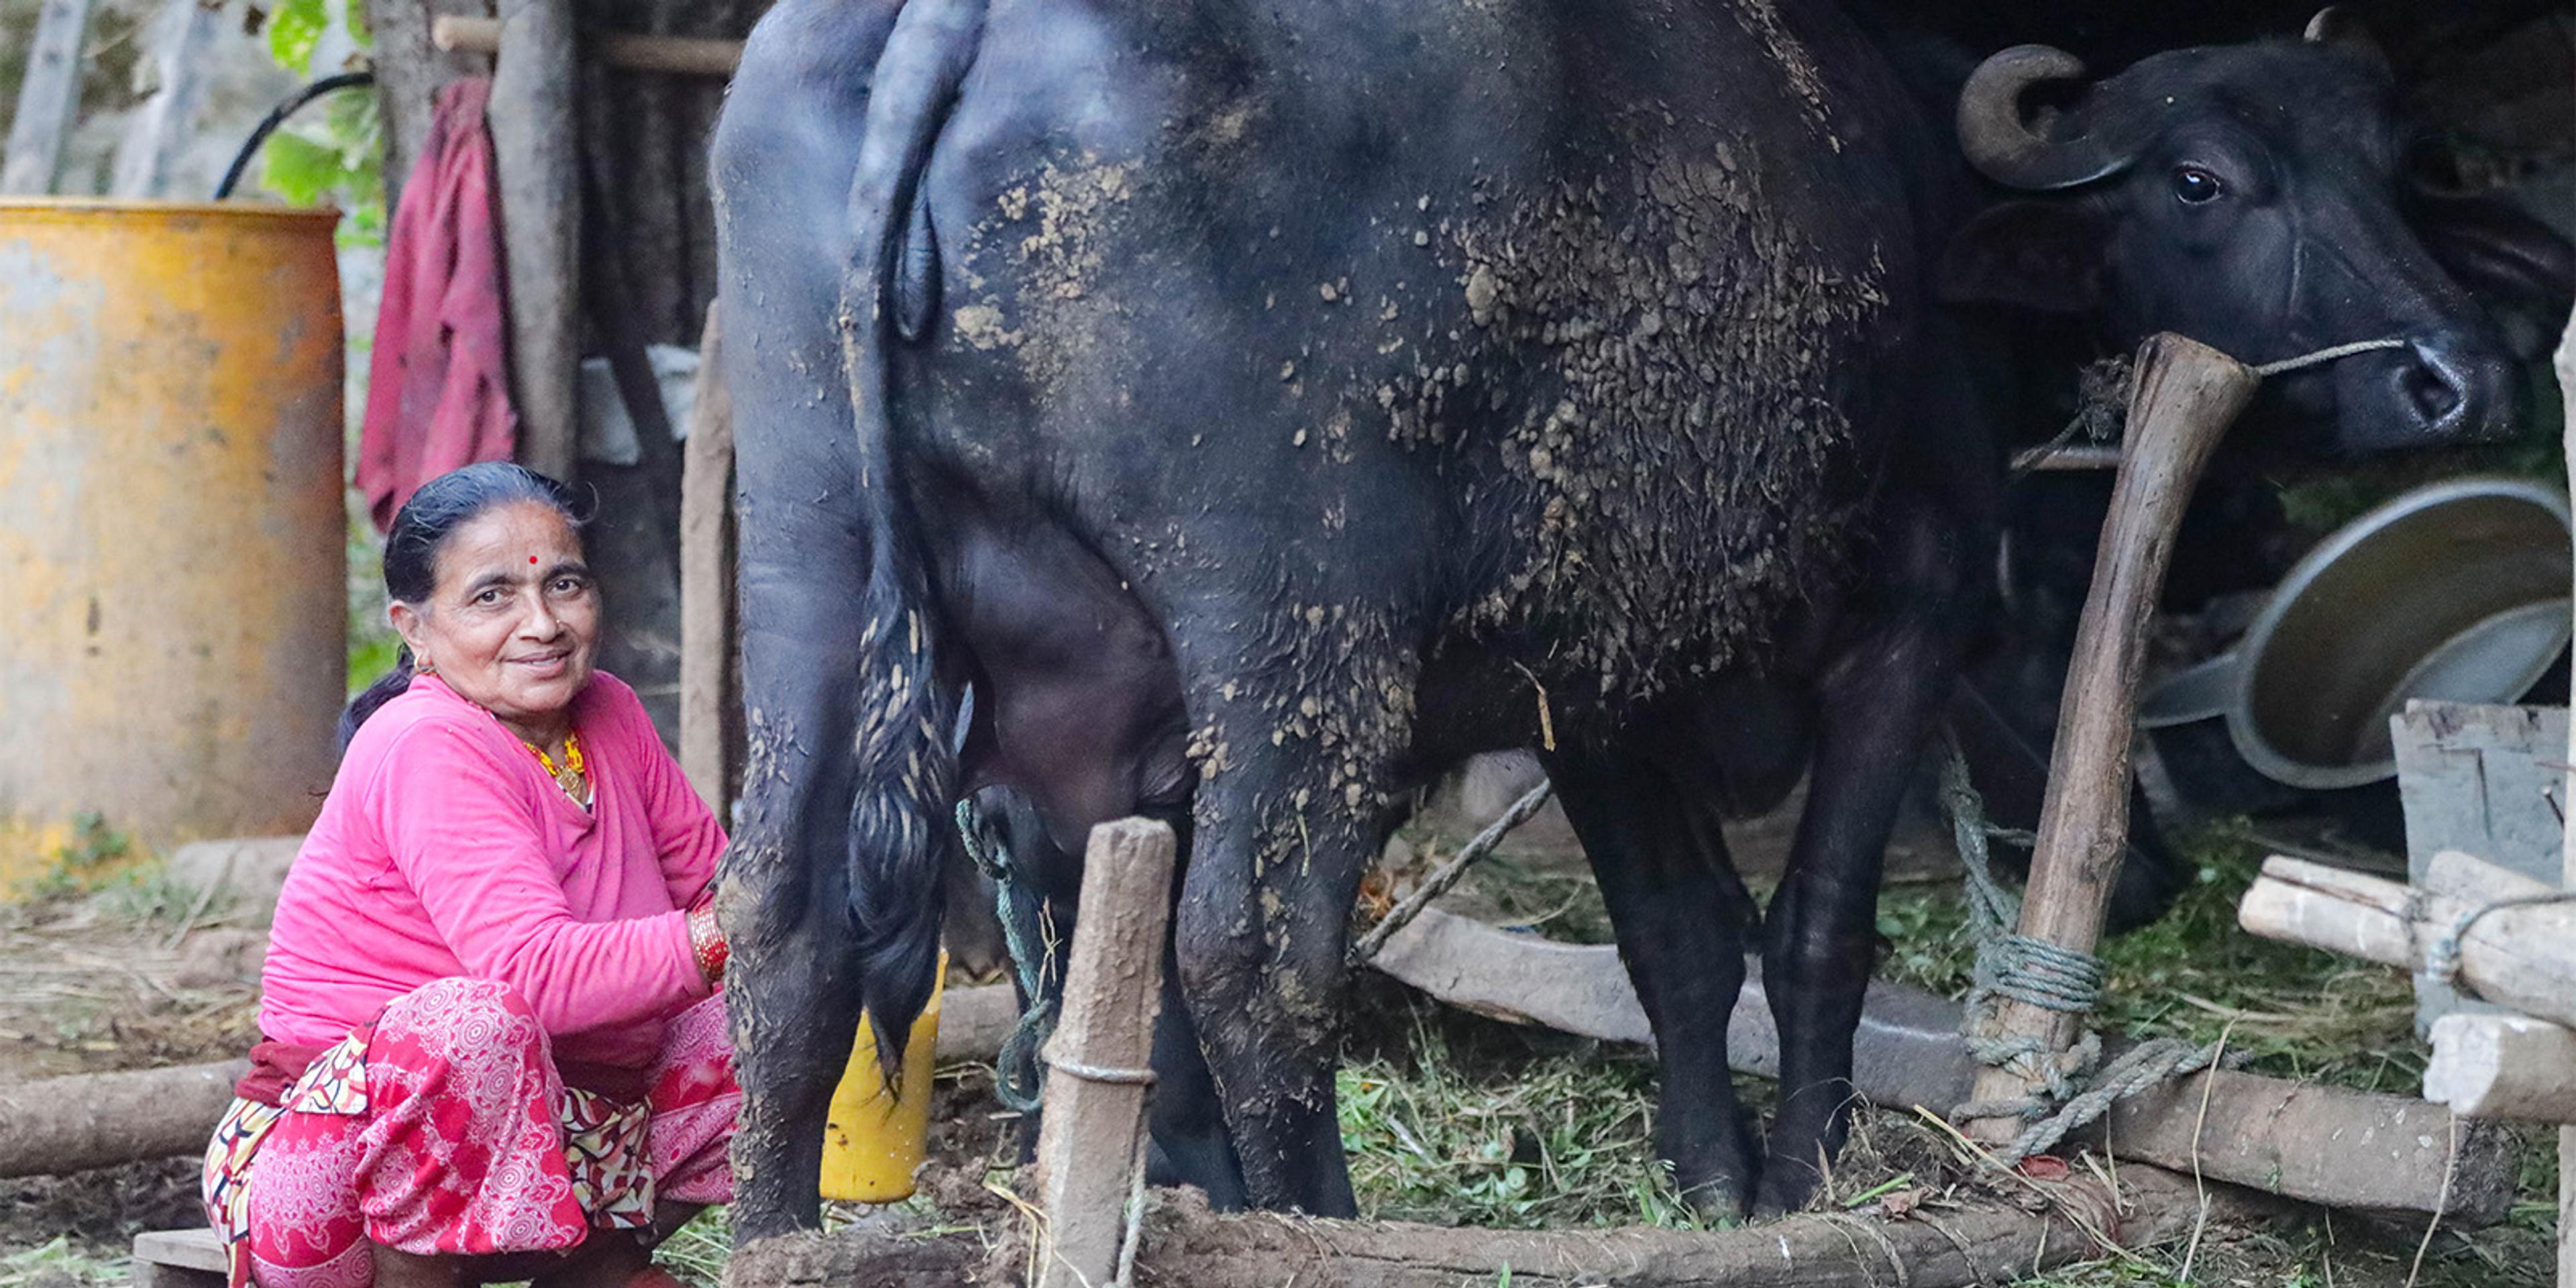 A woman milks an oxen in Nepal.